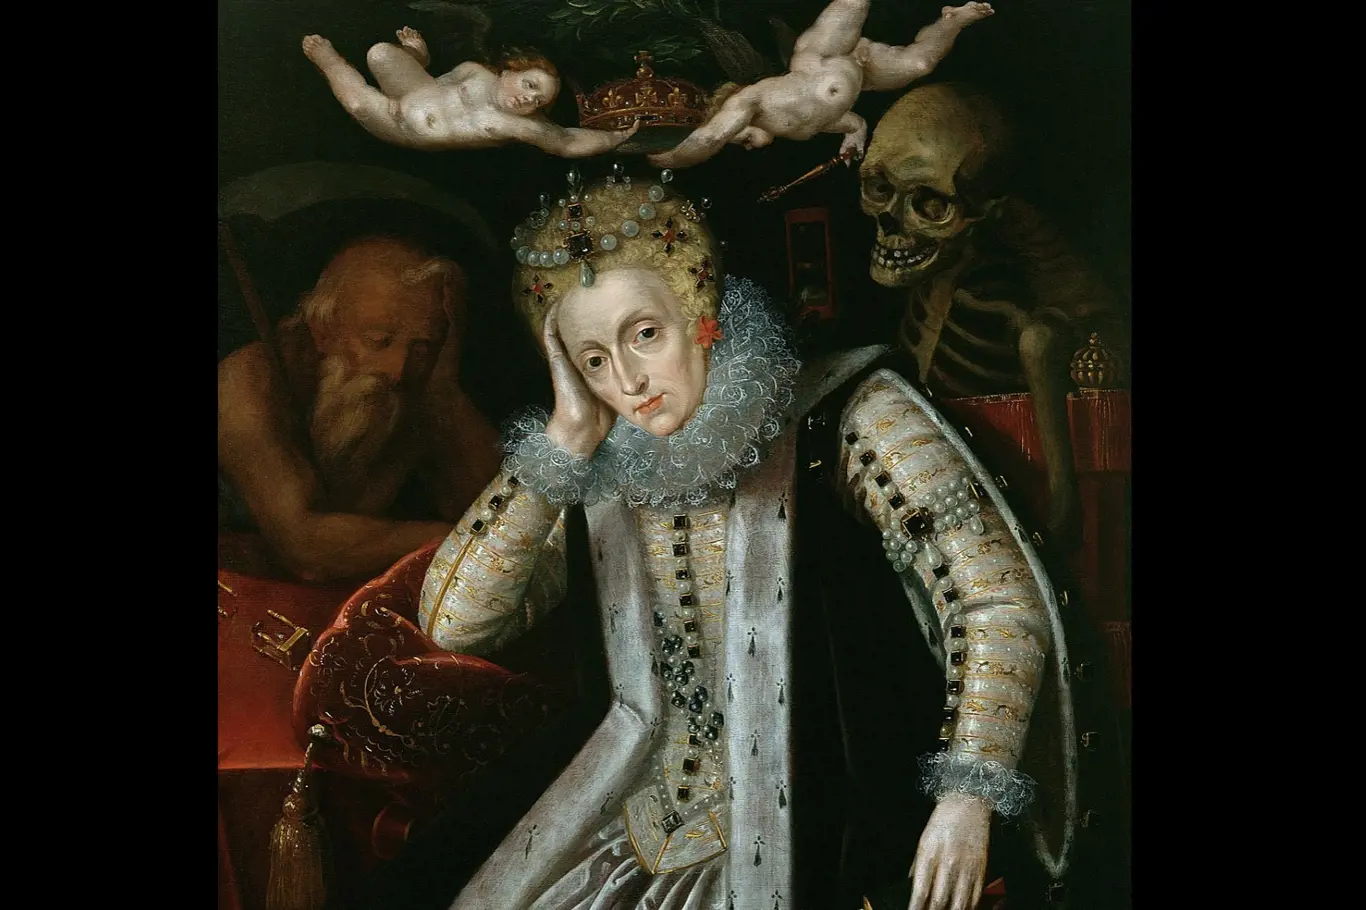 Portrét Alžběty I., namalovaný po roce 1620, v době prvního oživení zájmu o její vládu. Po její pravici spí Čas a přes levé rameno se jí dívá Smrt; dva putti drží nad její hlavou korunu